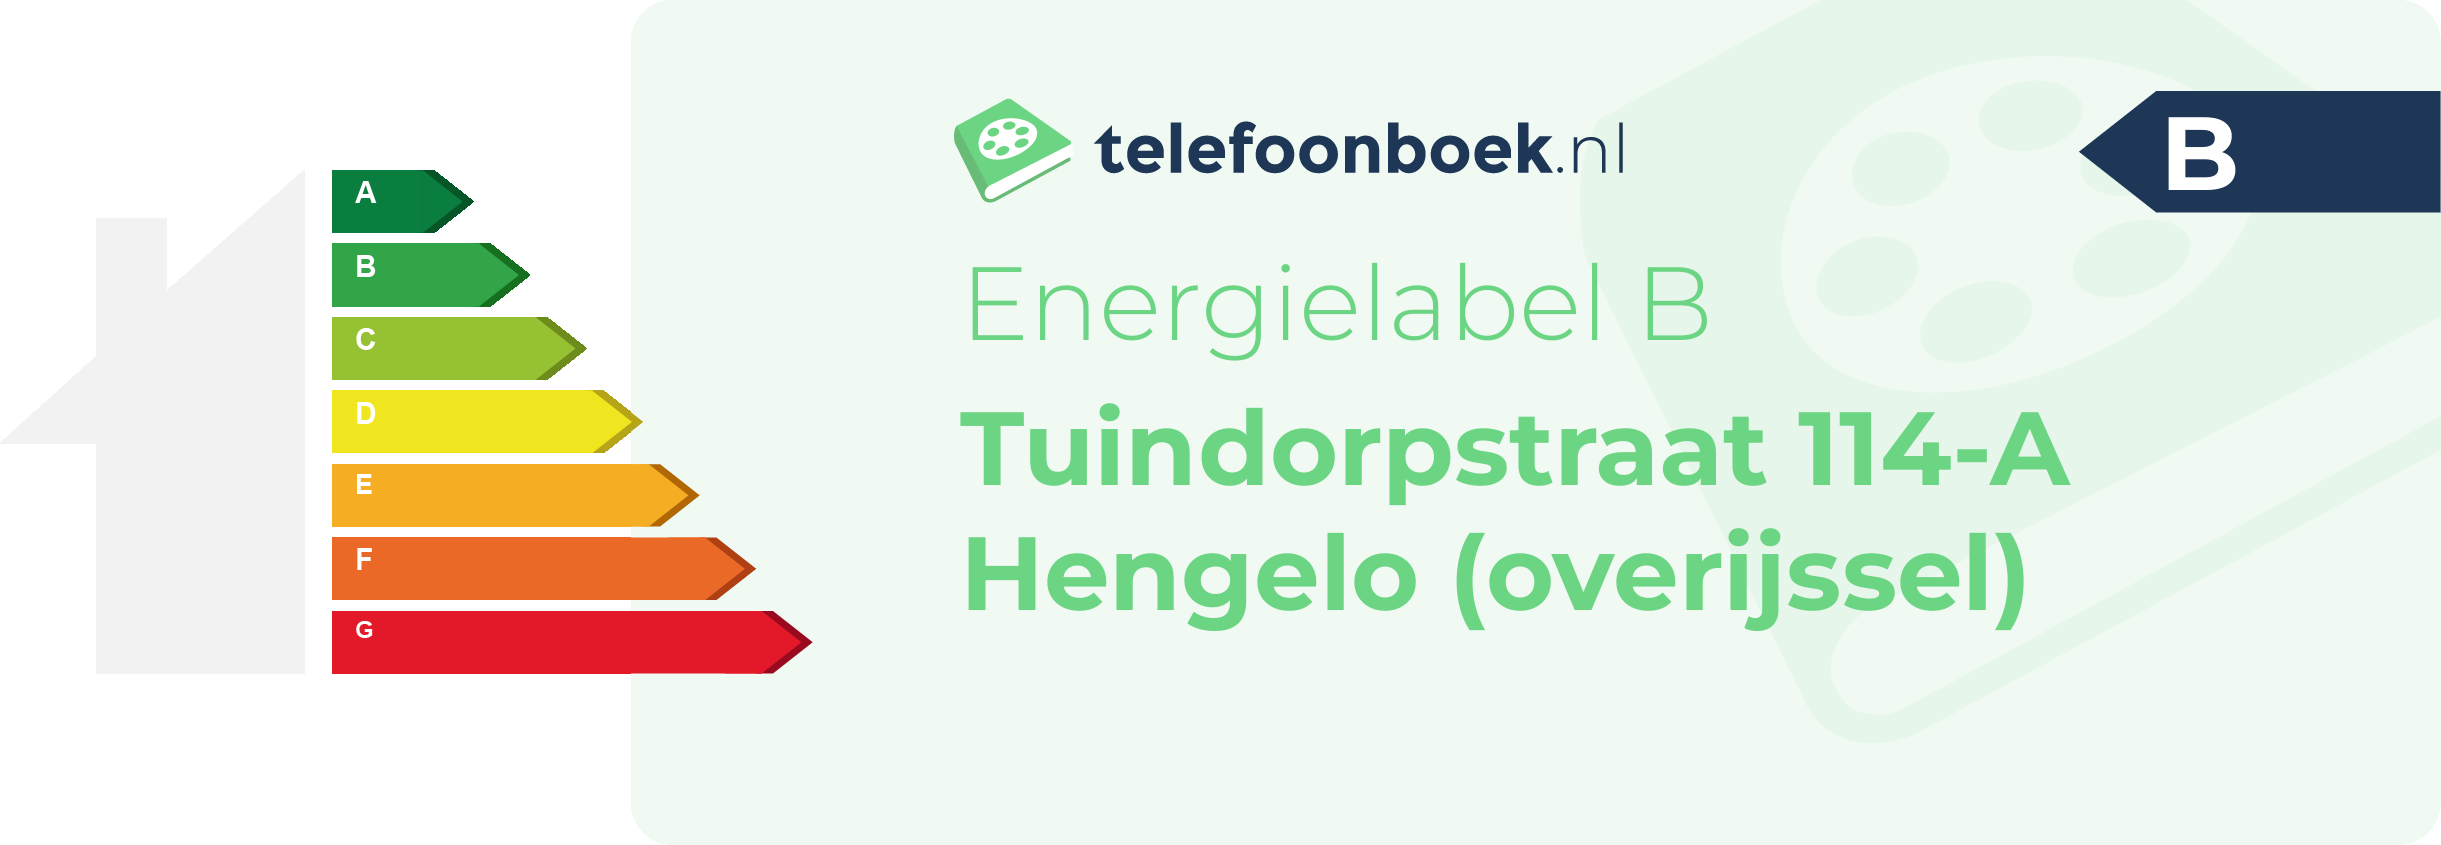 Energielabel Tuindorpstraat 114-A Hengelo (Overijssel)